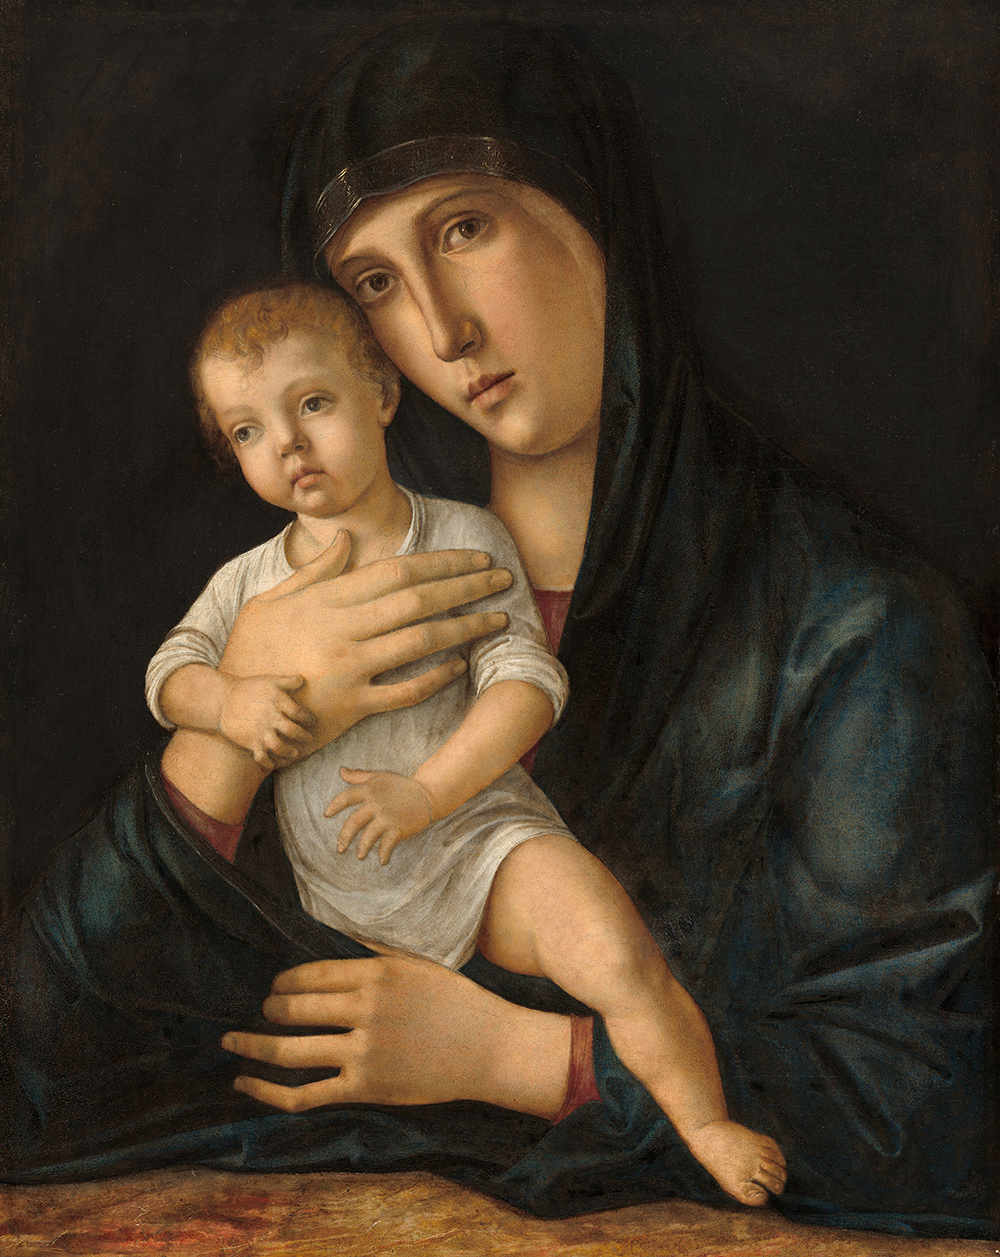 Pintura da Virgem olhando diretamente para o observador. Ela está carregando uma criança.